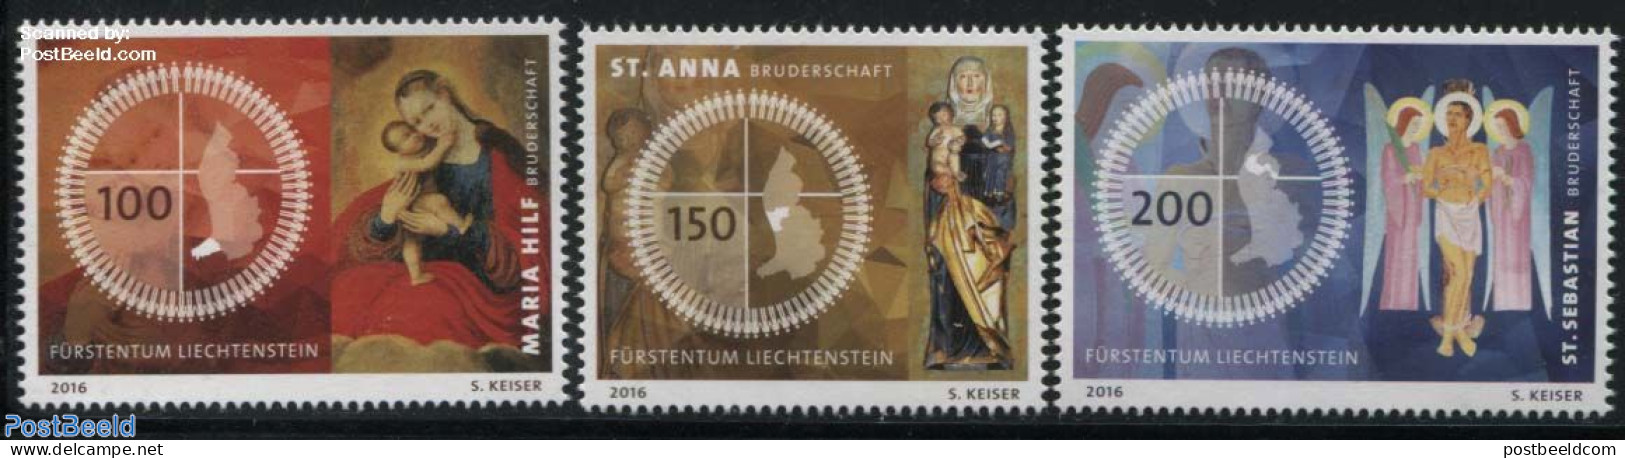 Liechtenstein 2016 Fraternities In Liechtenstein 3v, Mint NH, Religion - Various - Religion - Maps - Neufs